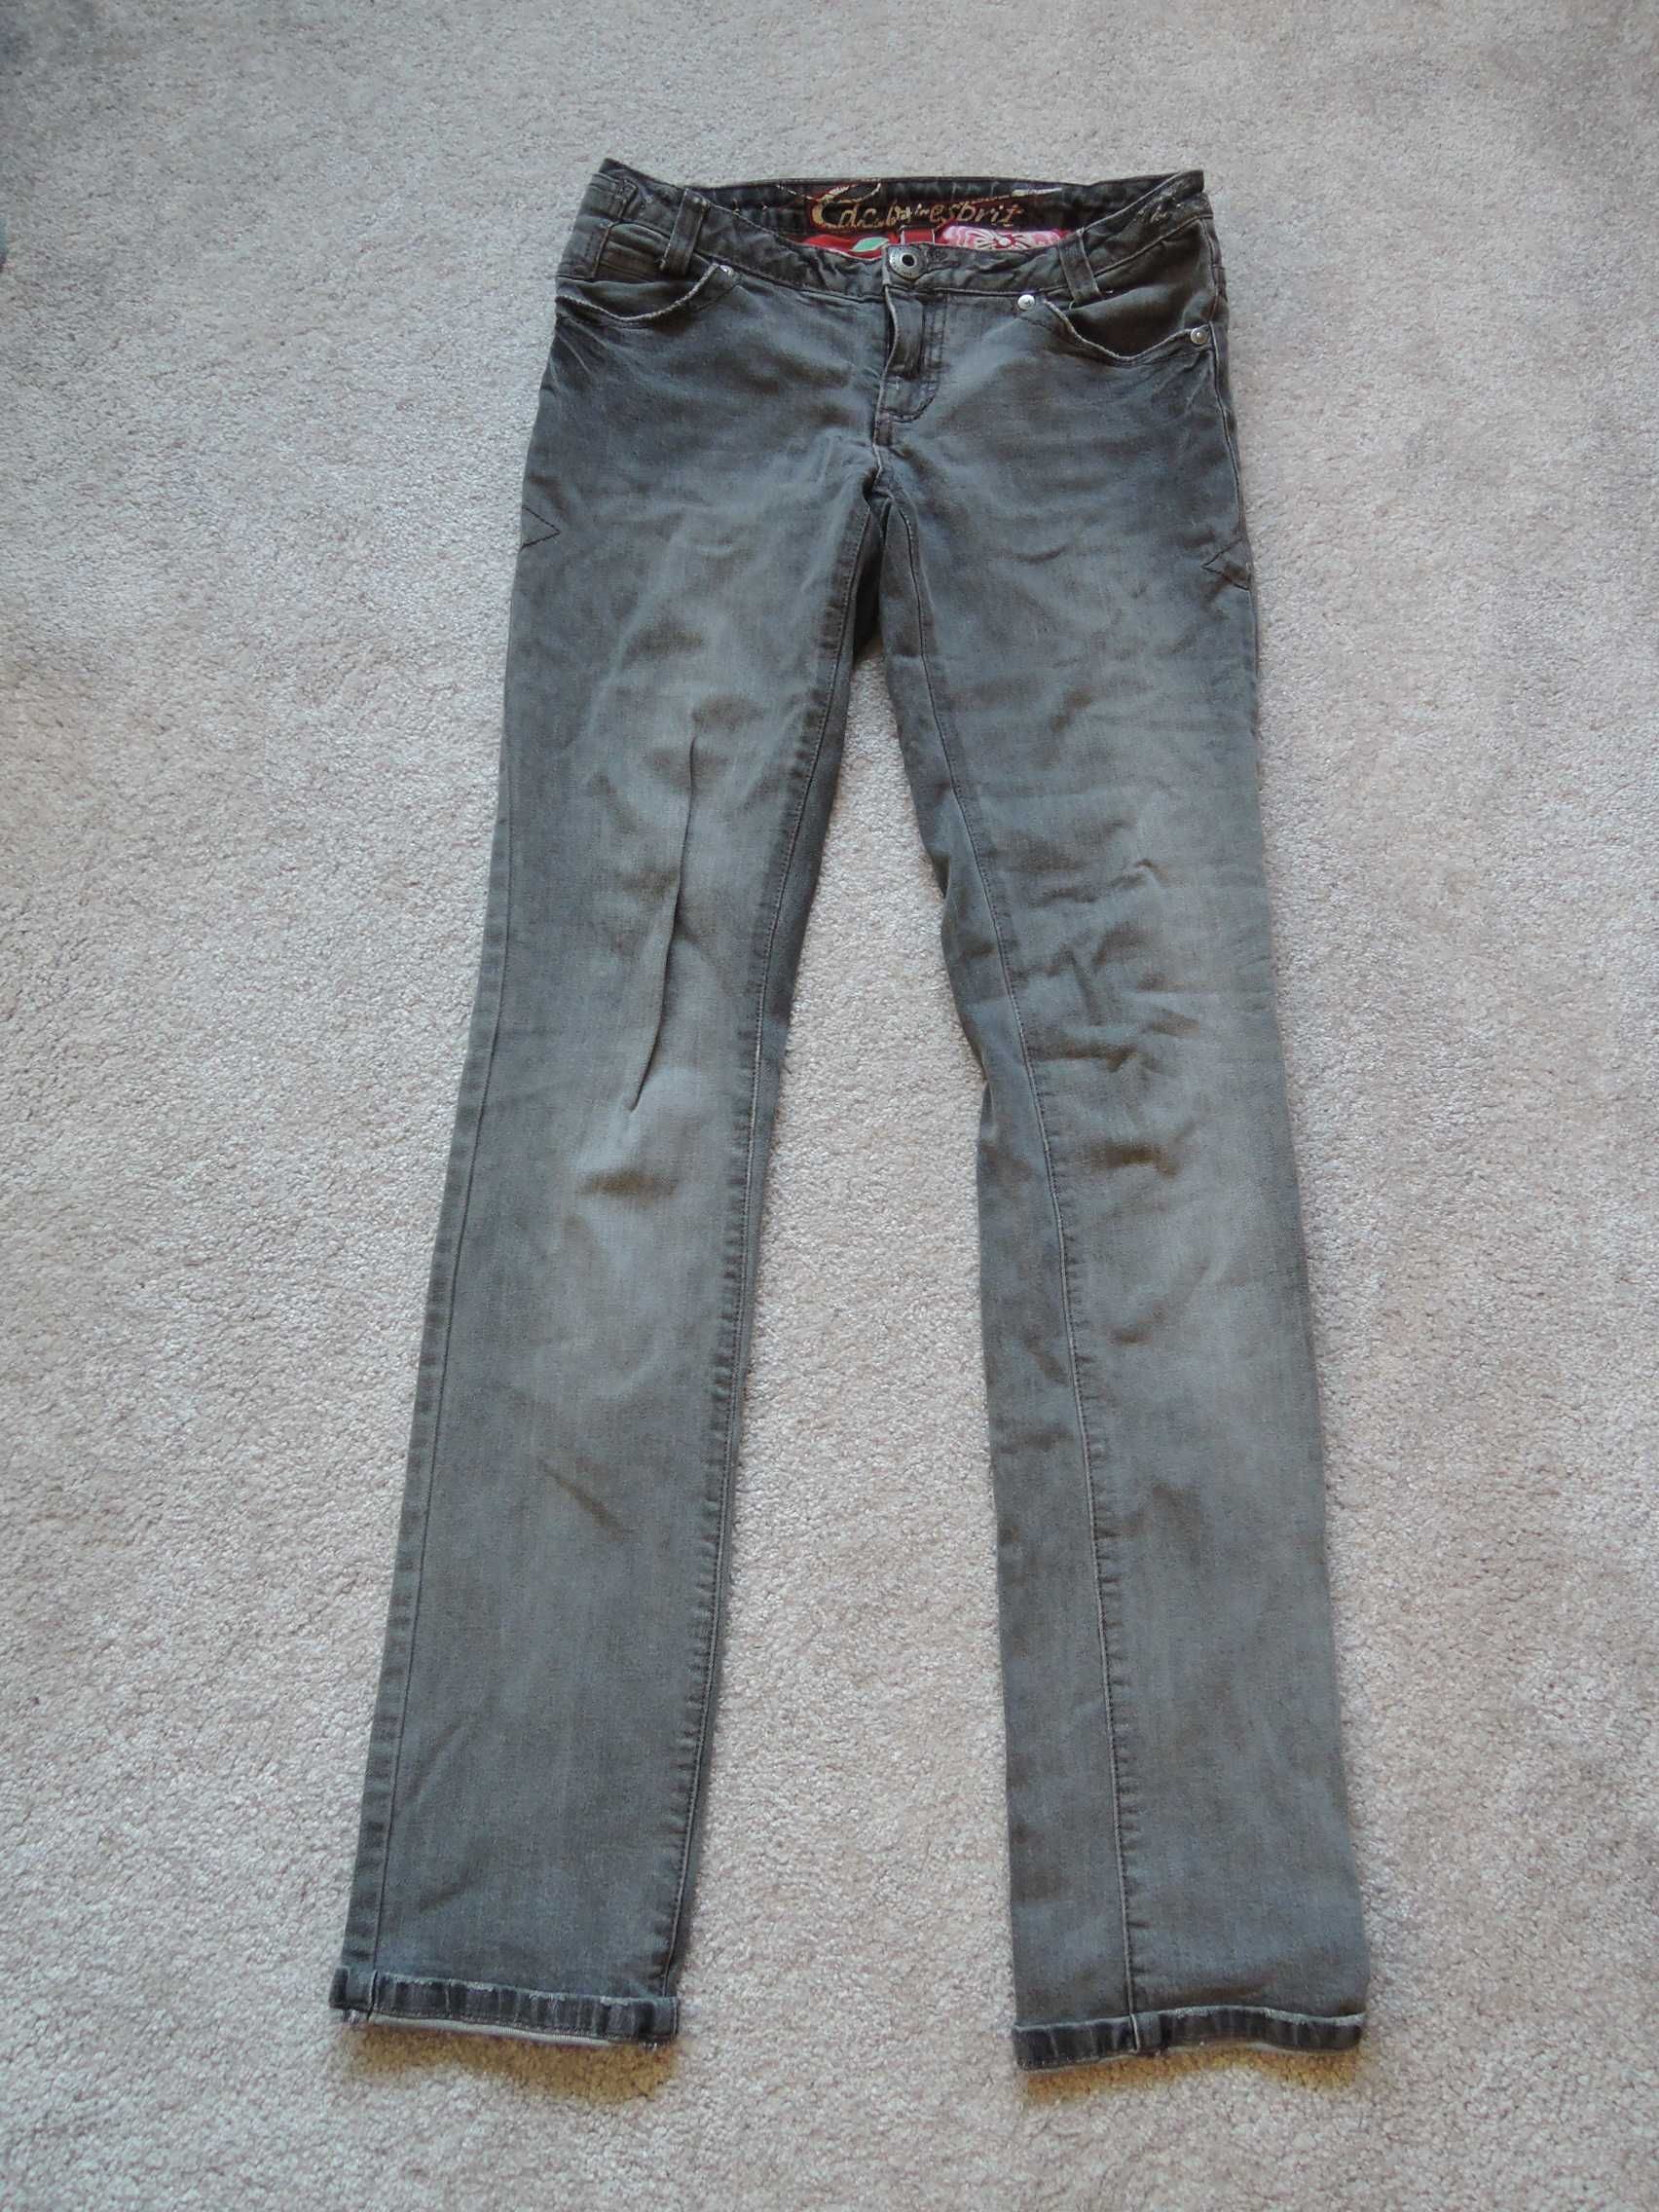 szare spodnie jeans rozm 36